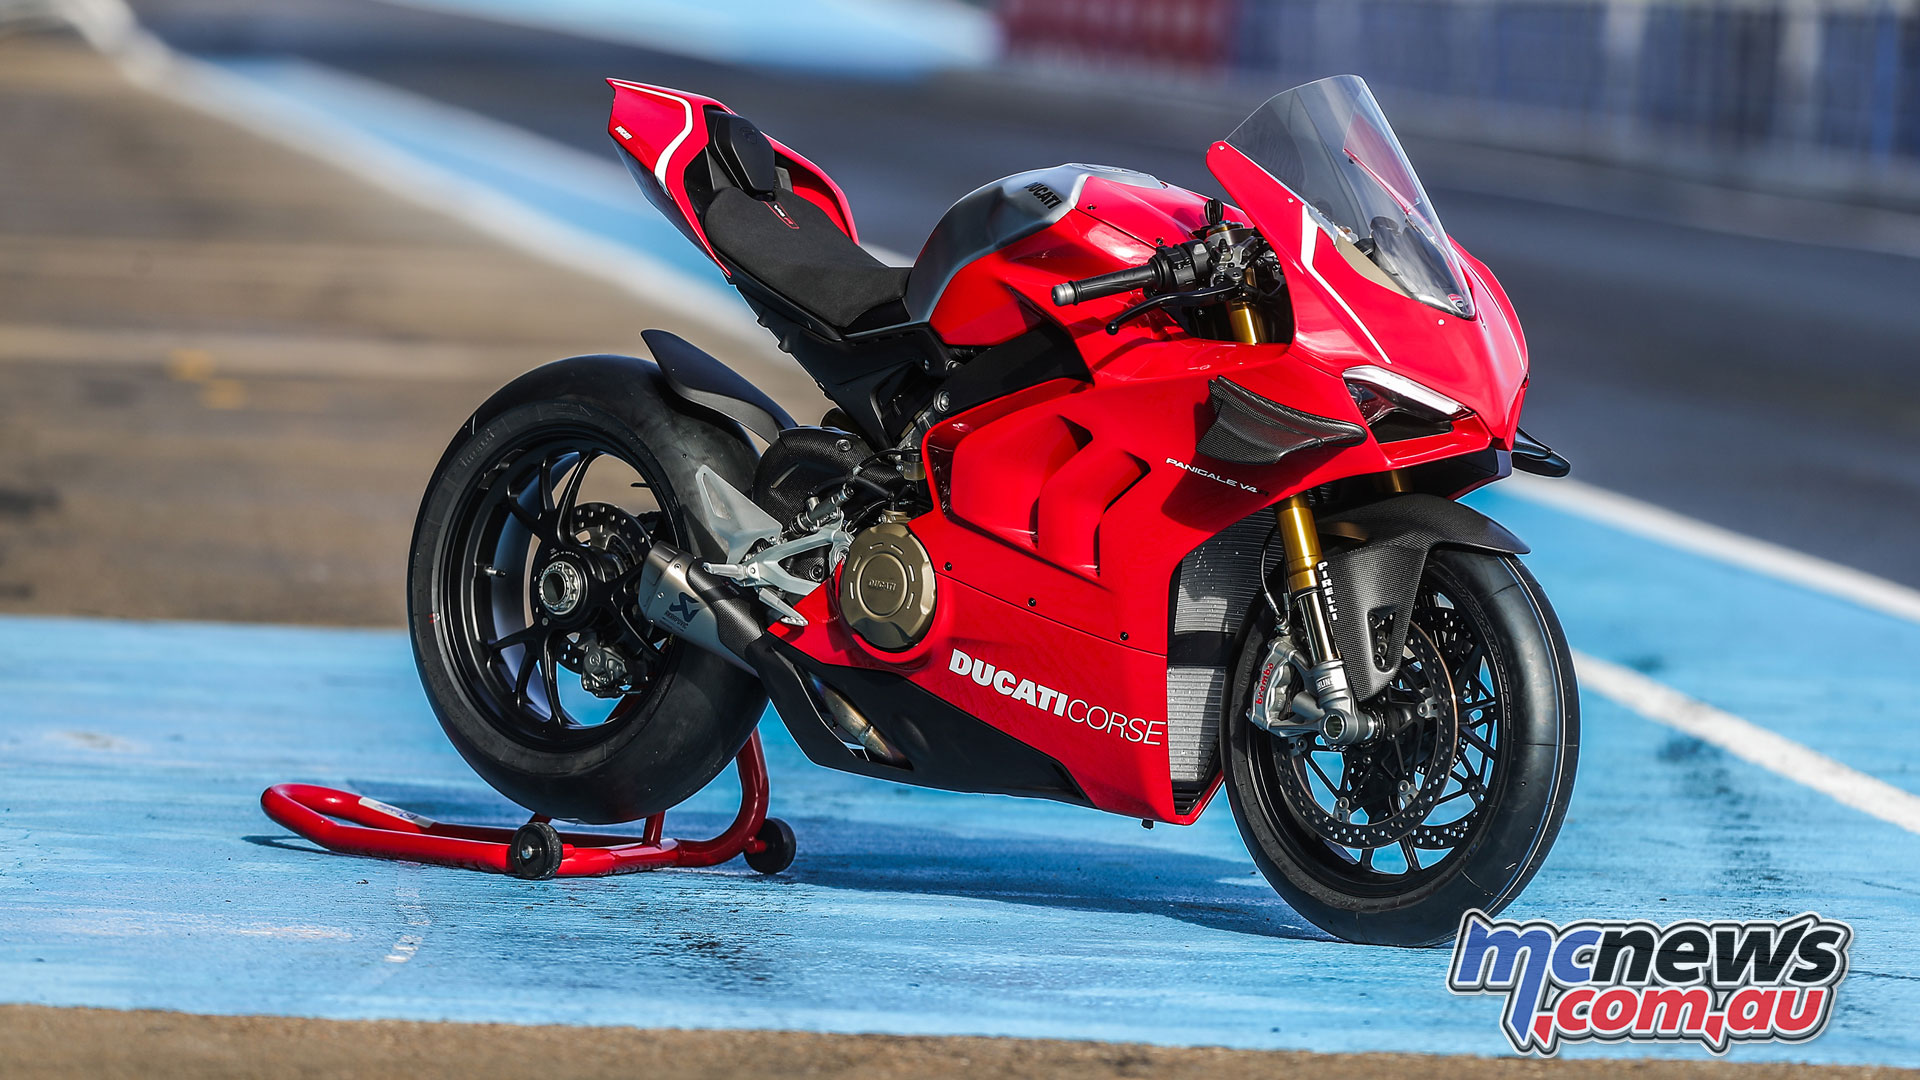 2019 Ducati Panigale V4 R 998cc racer More tech details 1920x1080